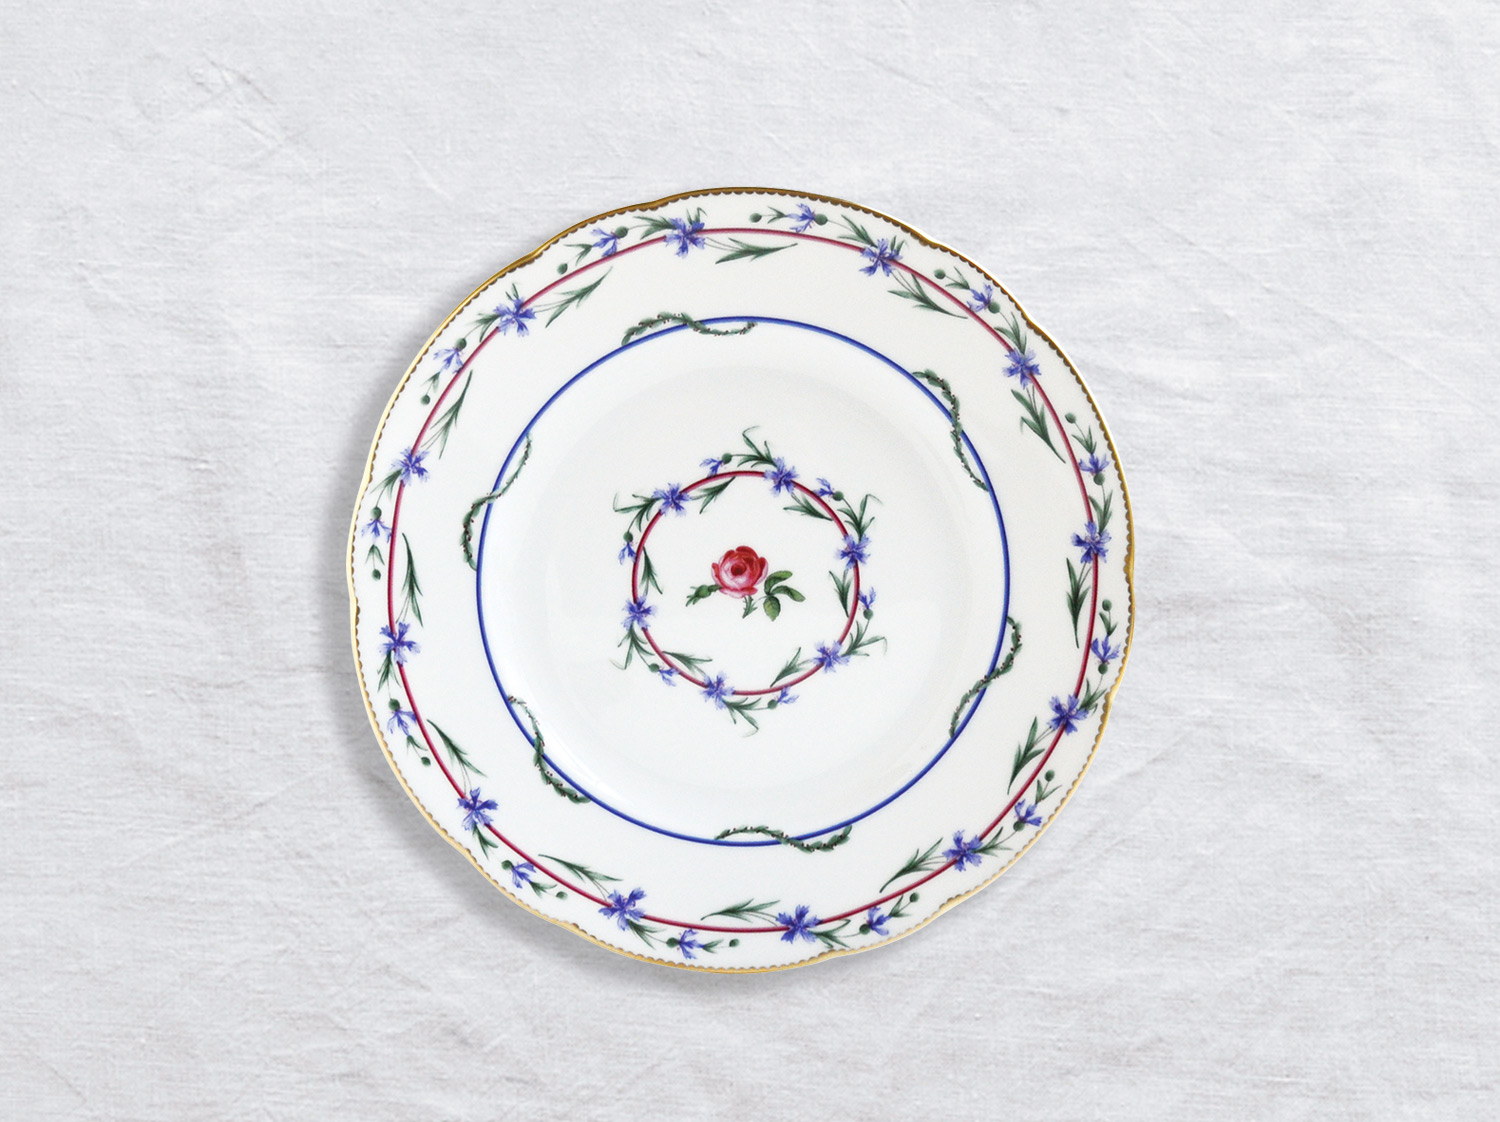 Assiette à dessert 21 cm en porcelaine de la collection Gobelet du roy Bernardaud